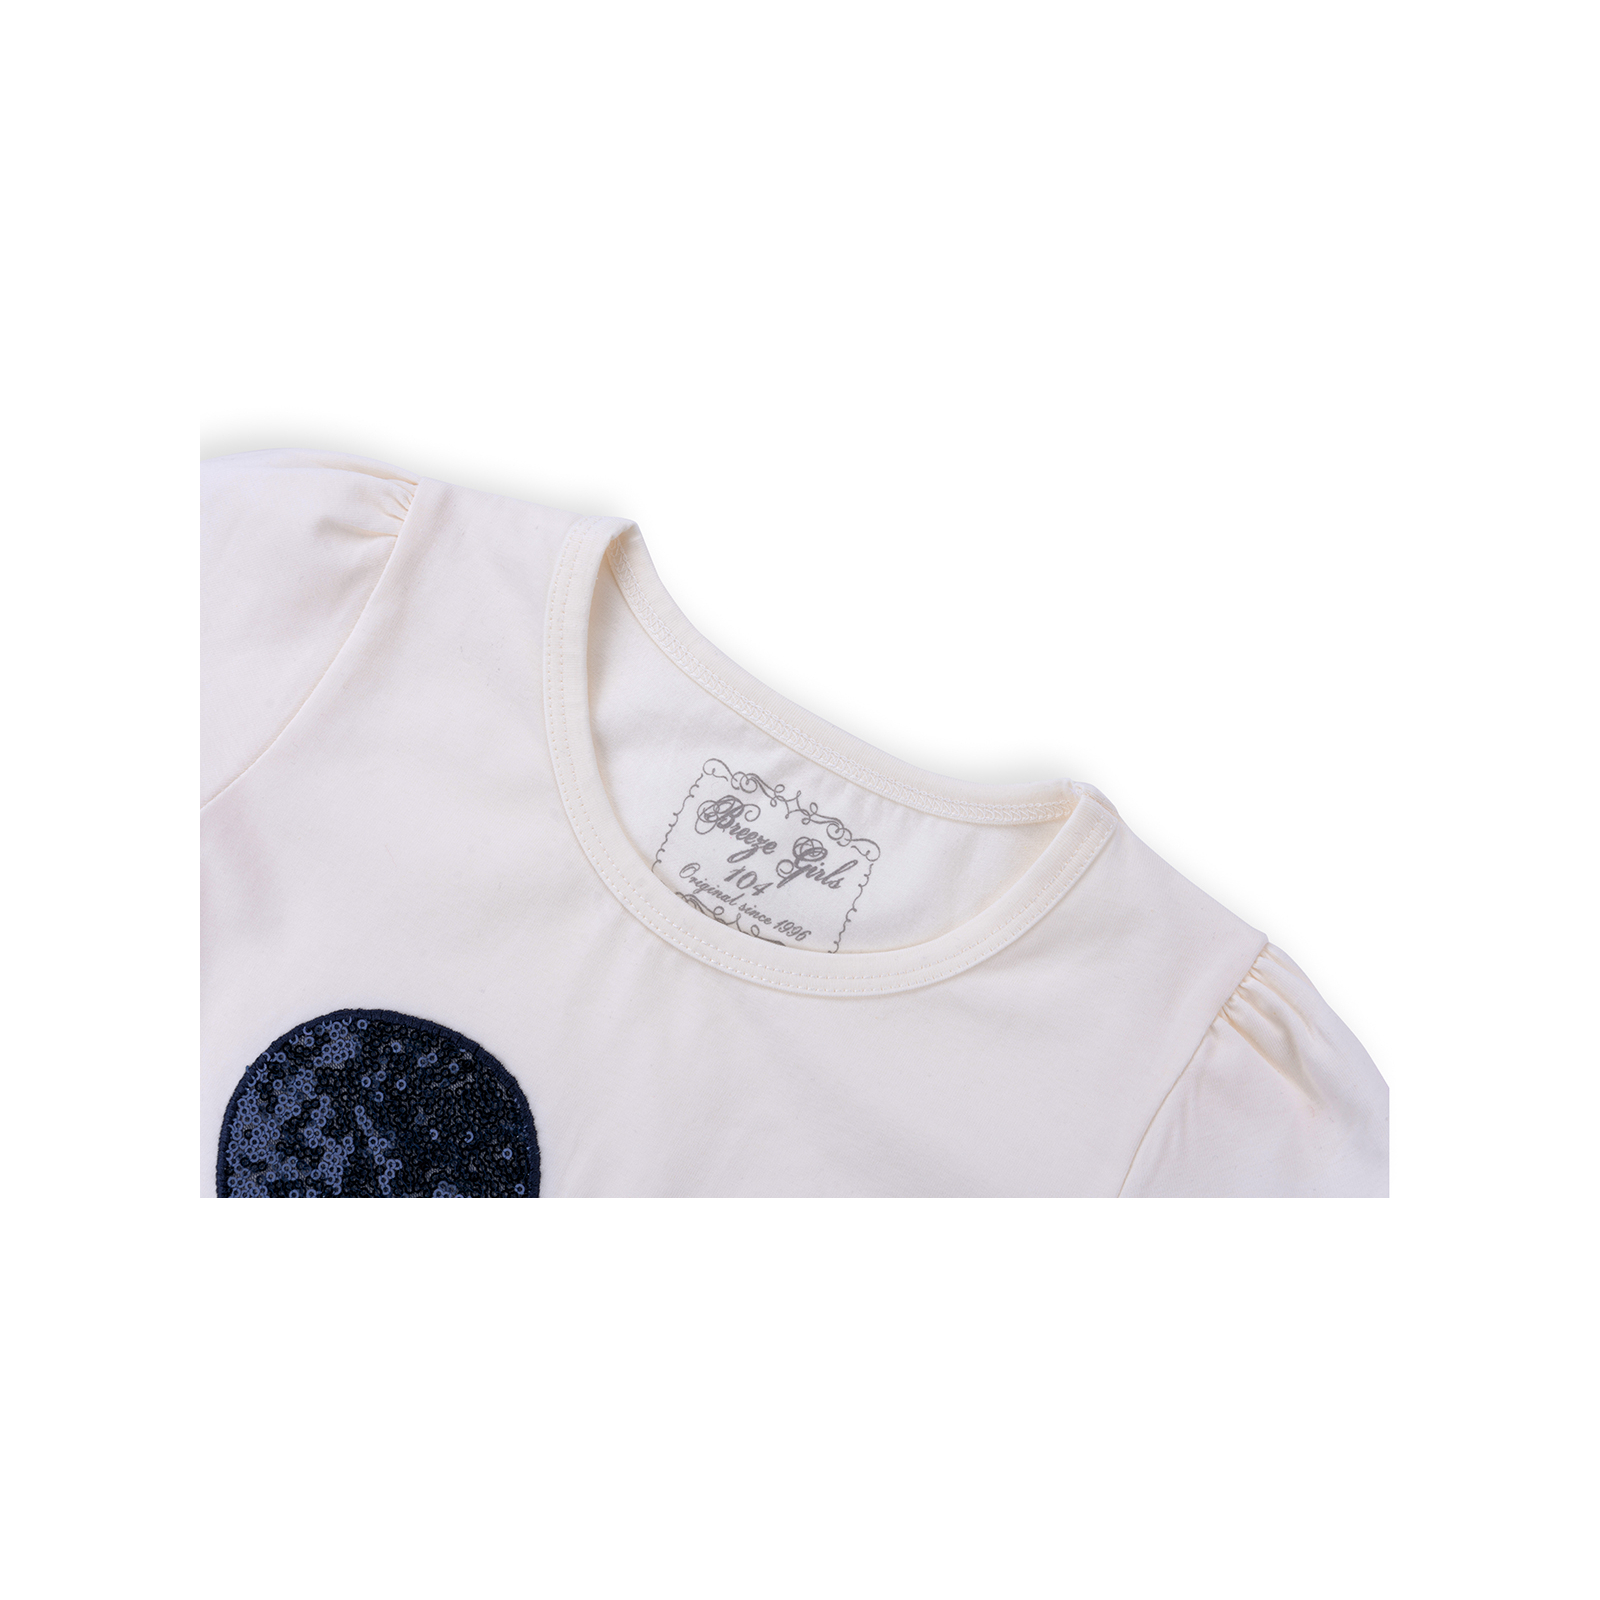 Набор детской одежды Breeze футболка с бабочкой со штанишками (8969-98G-cream) изображение 4